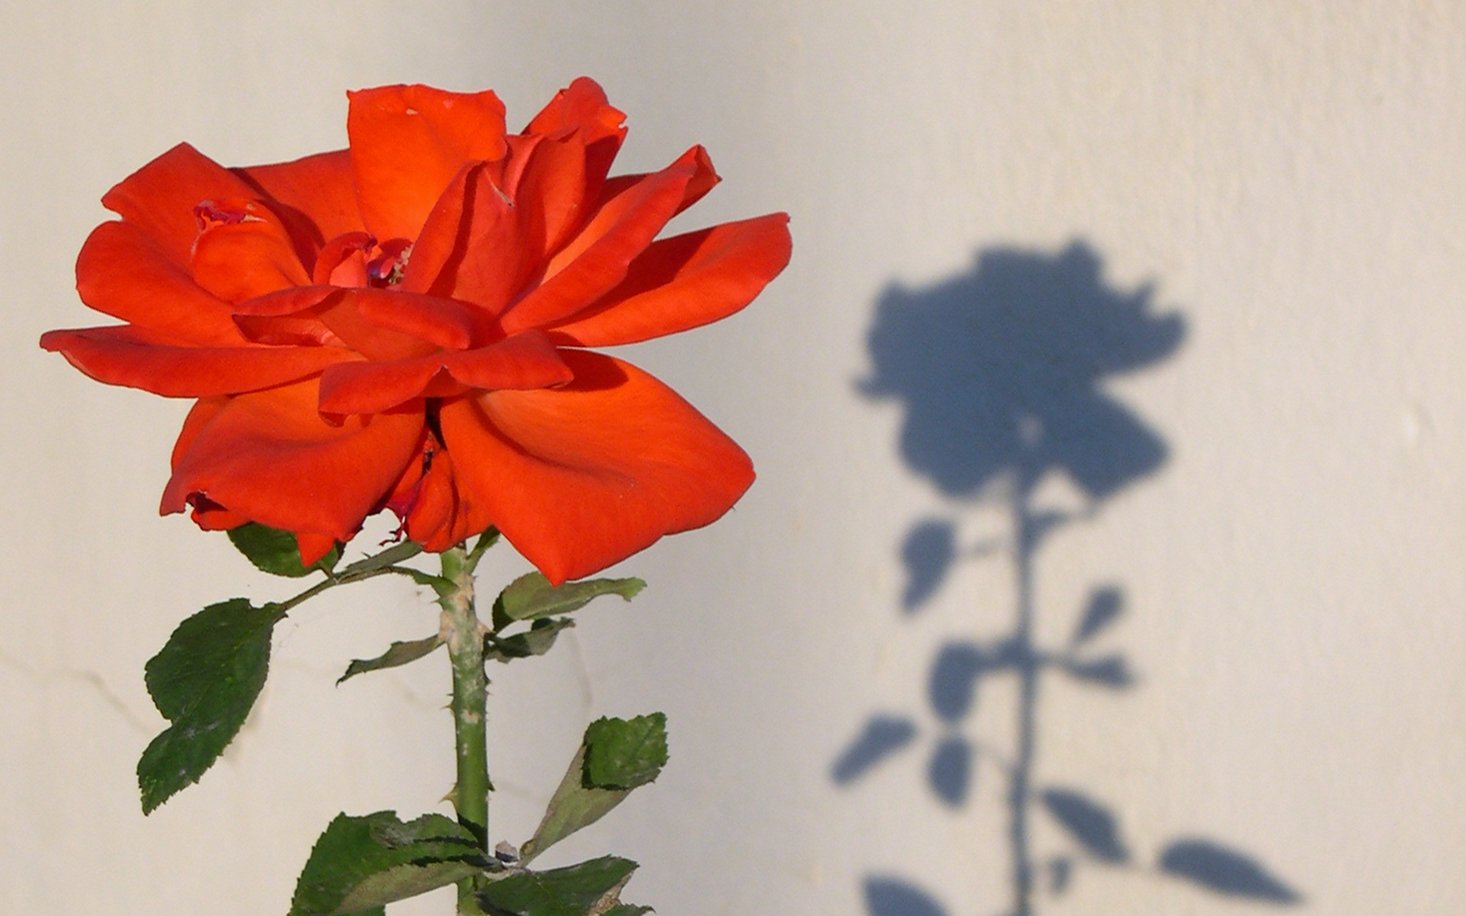 růže, trn, stín / symbol trnů a růží  je spojován se sv. Ritou / foto Michal Němeček